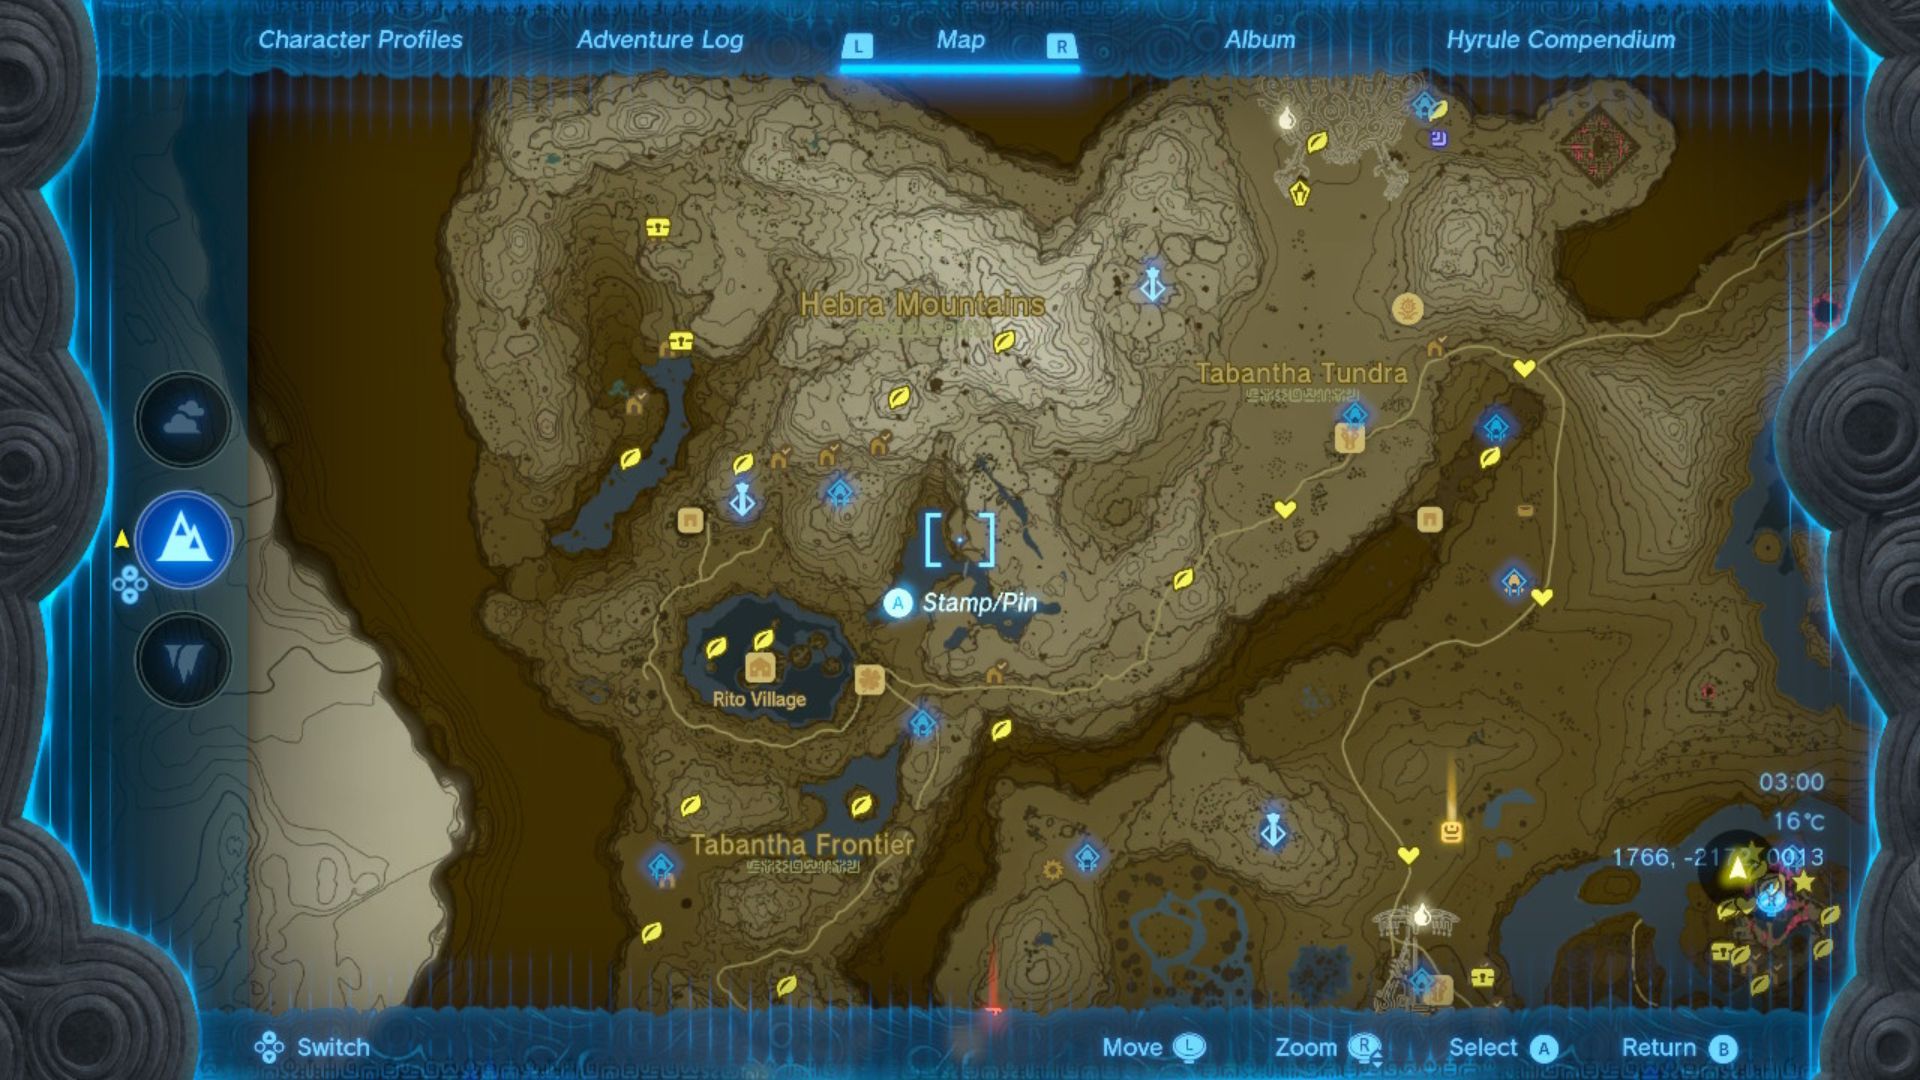 Zelda: Kapliczki Tears of the Kingdom zaznaczone żółtymi kółkami mango na brązowo-białej mapie Hyrule usianej różnymi szpilkami i znaczkami, drogami i rzekami.